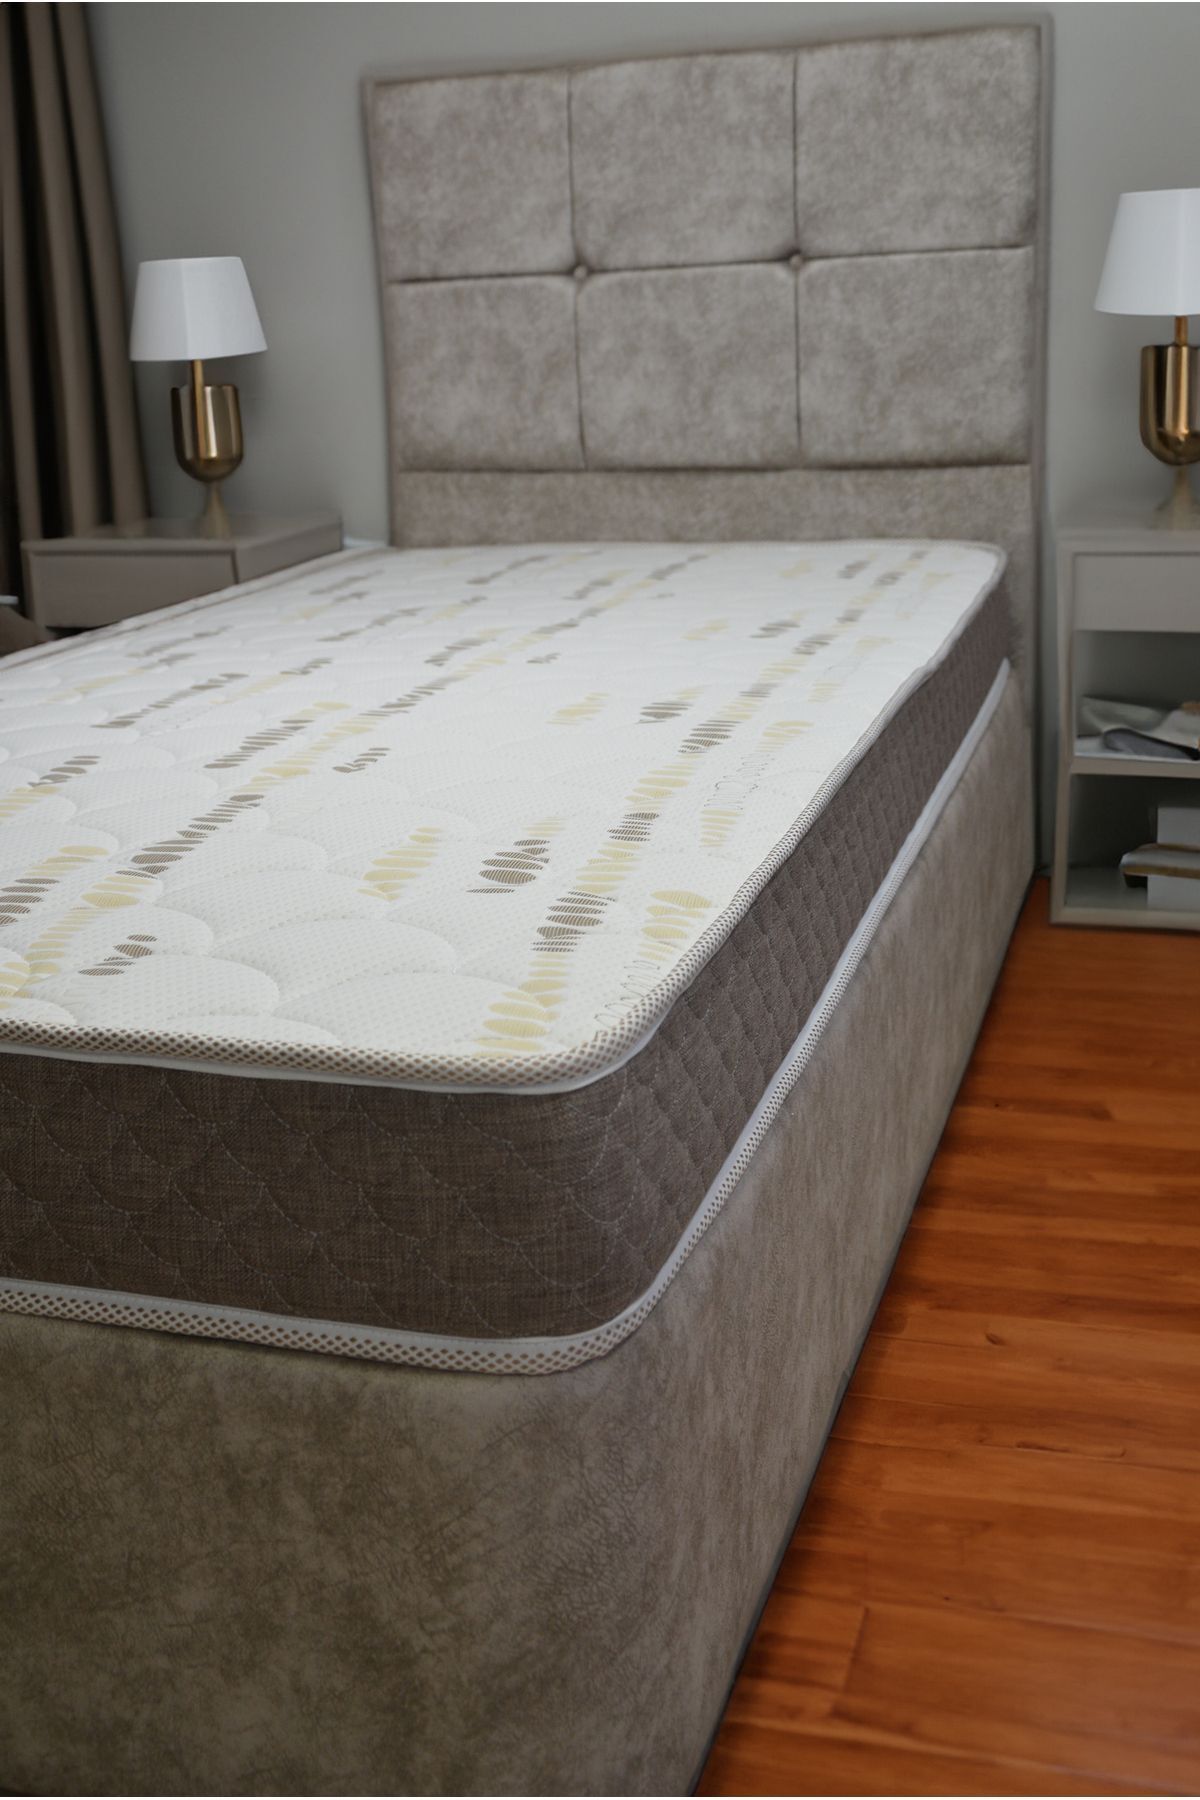 Pure Sleep 20 cm tek kişilik YAYLI baza yatağı, unisex full ortopedik yataklar, lux çocuk baza yatak